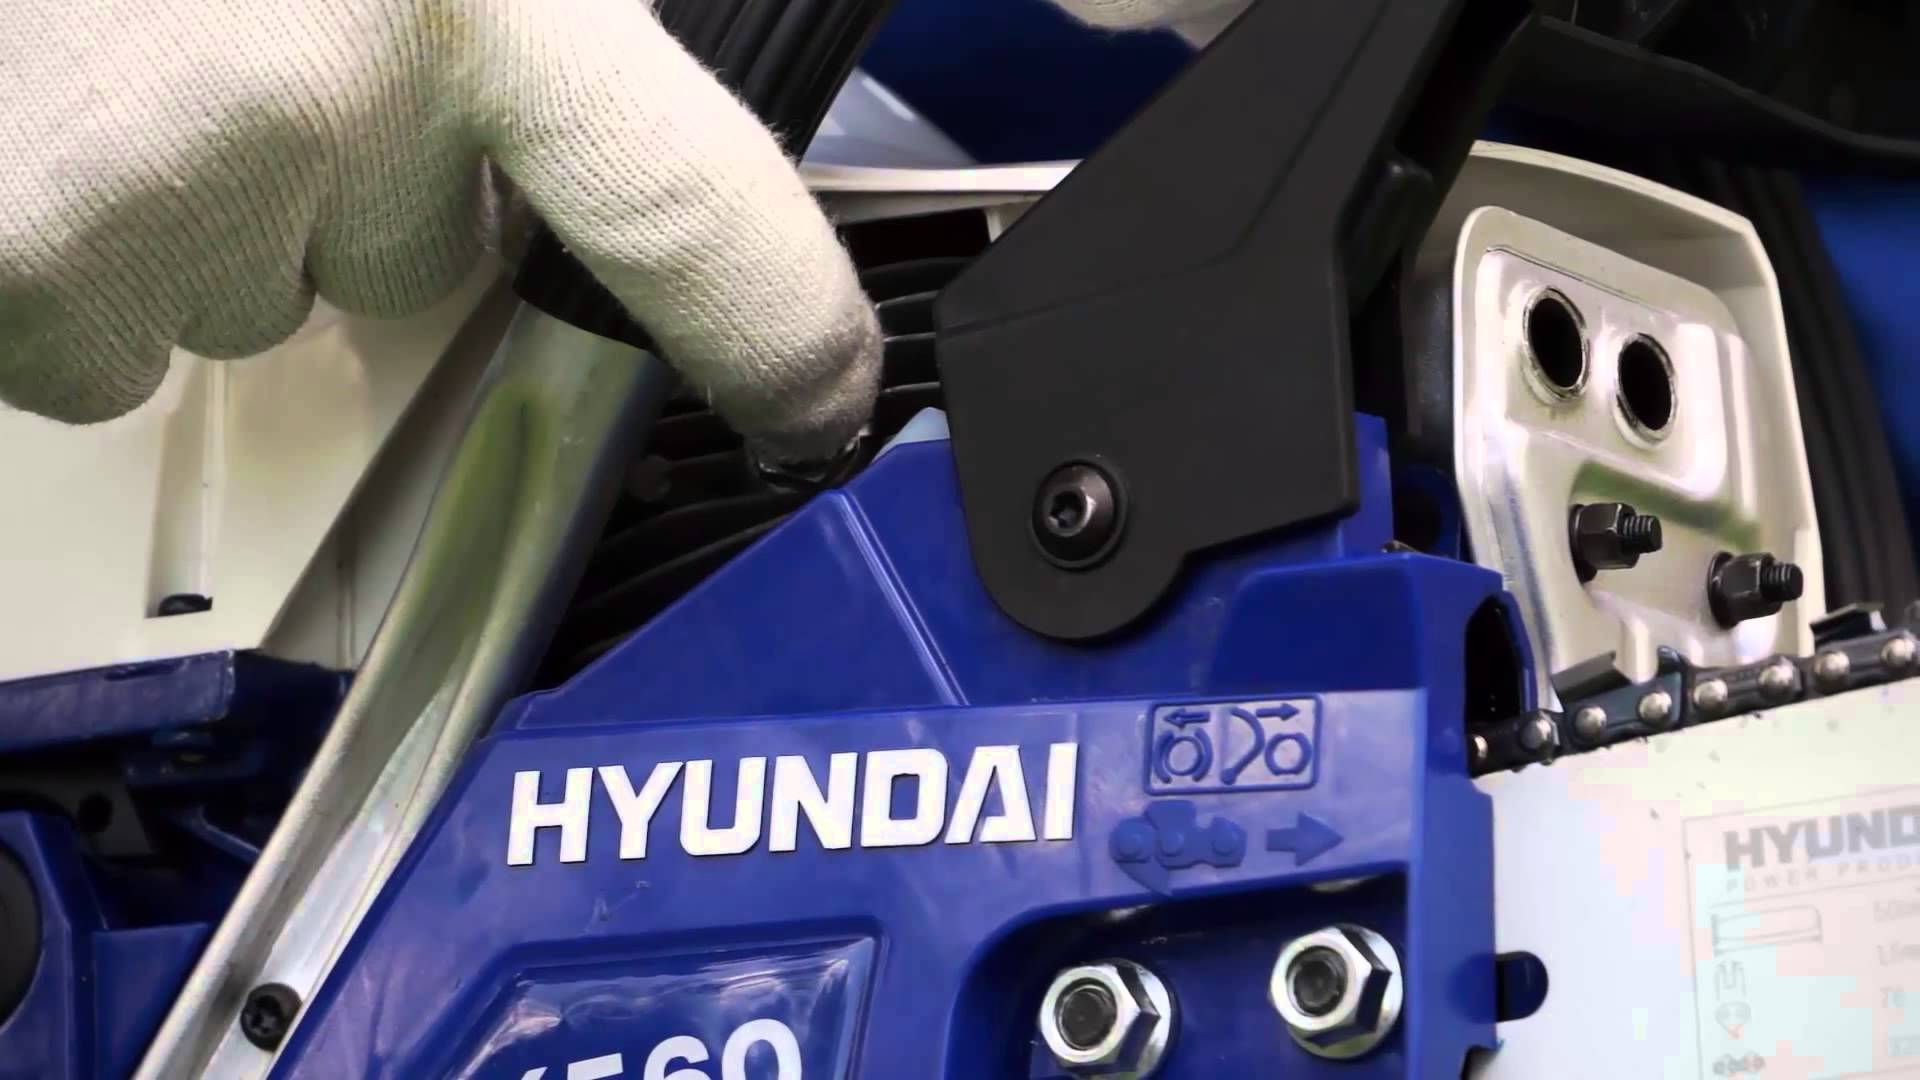 Motosierra Hyundai opiniones: una descripción completa de la serie de modelos de motosierras Hyundai